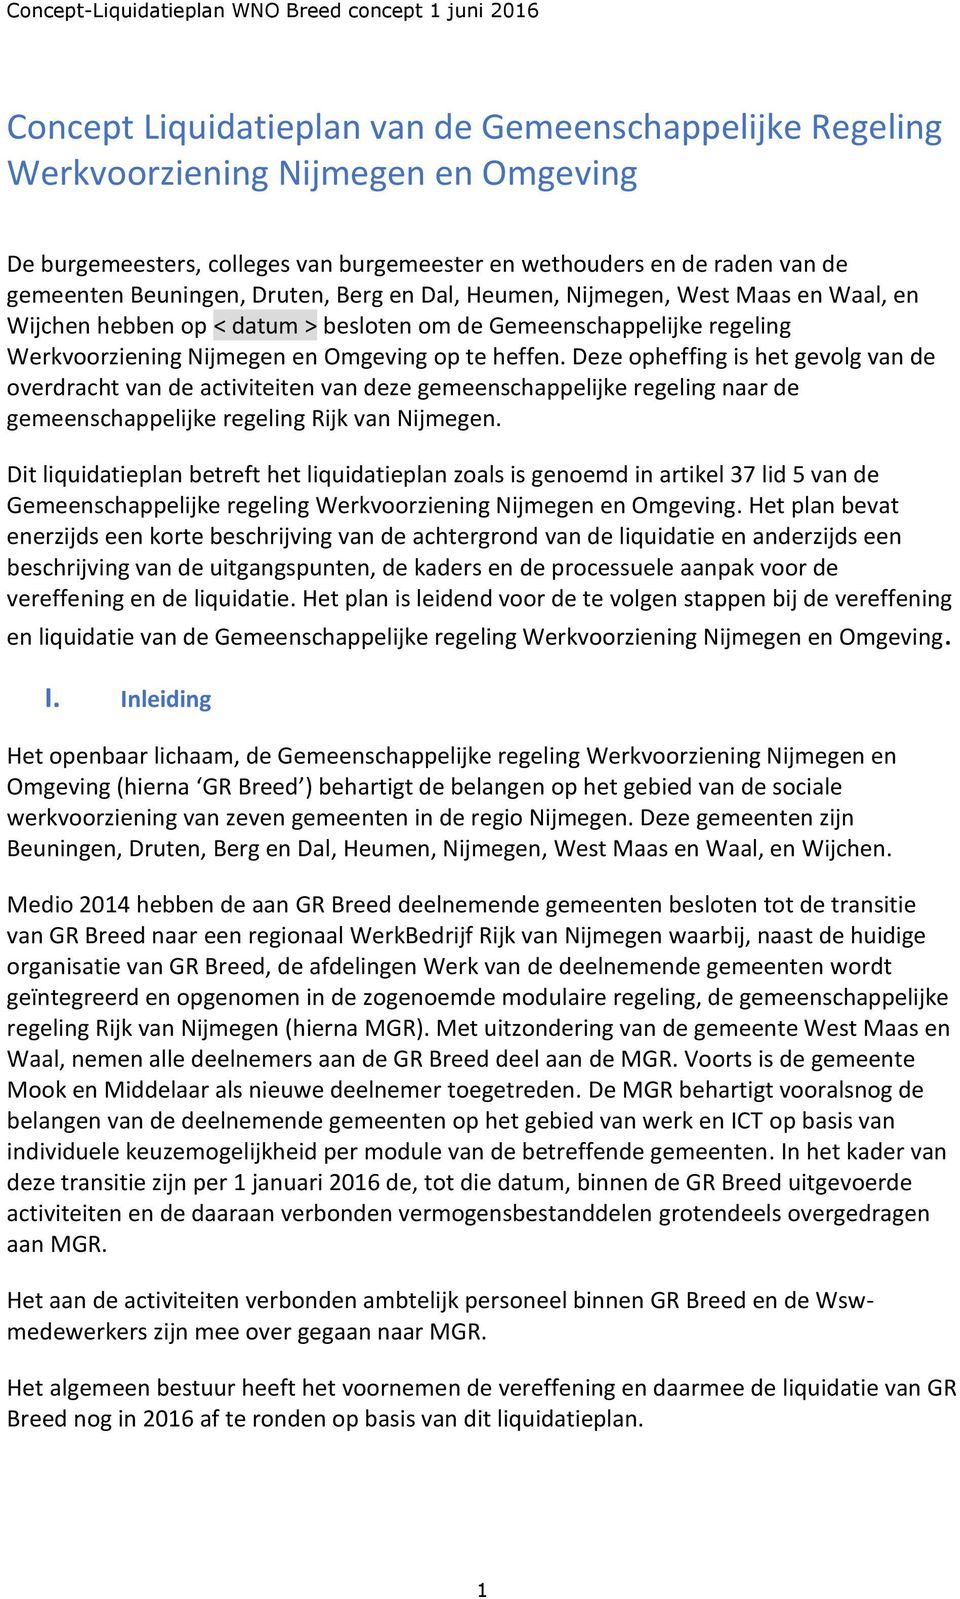 Deze opheffing is het gevolg van de overdracht van de activiteiten van deze gemeenschappelijke regeling naar de gemeenschappelijke regeling Rijk van Nijmegen.